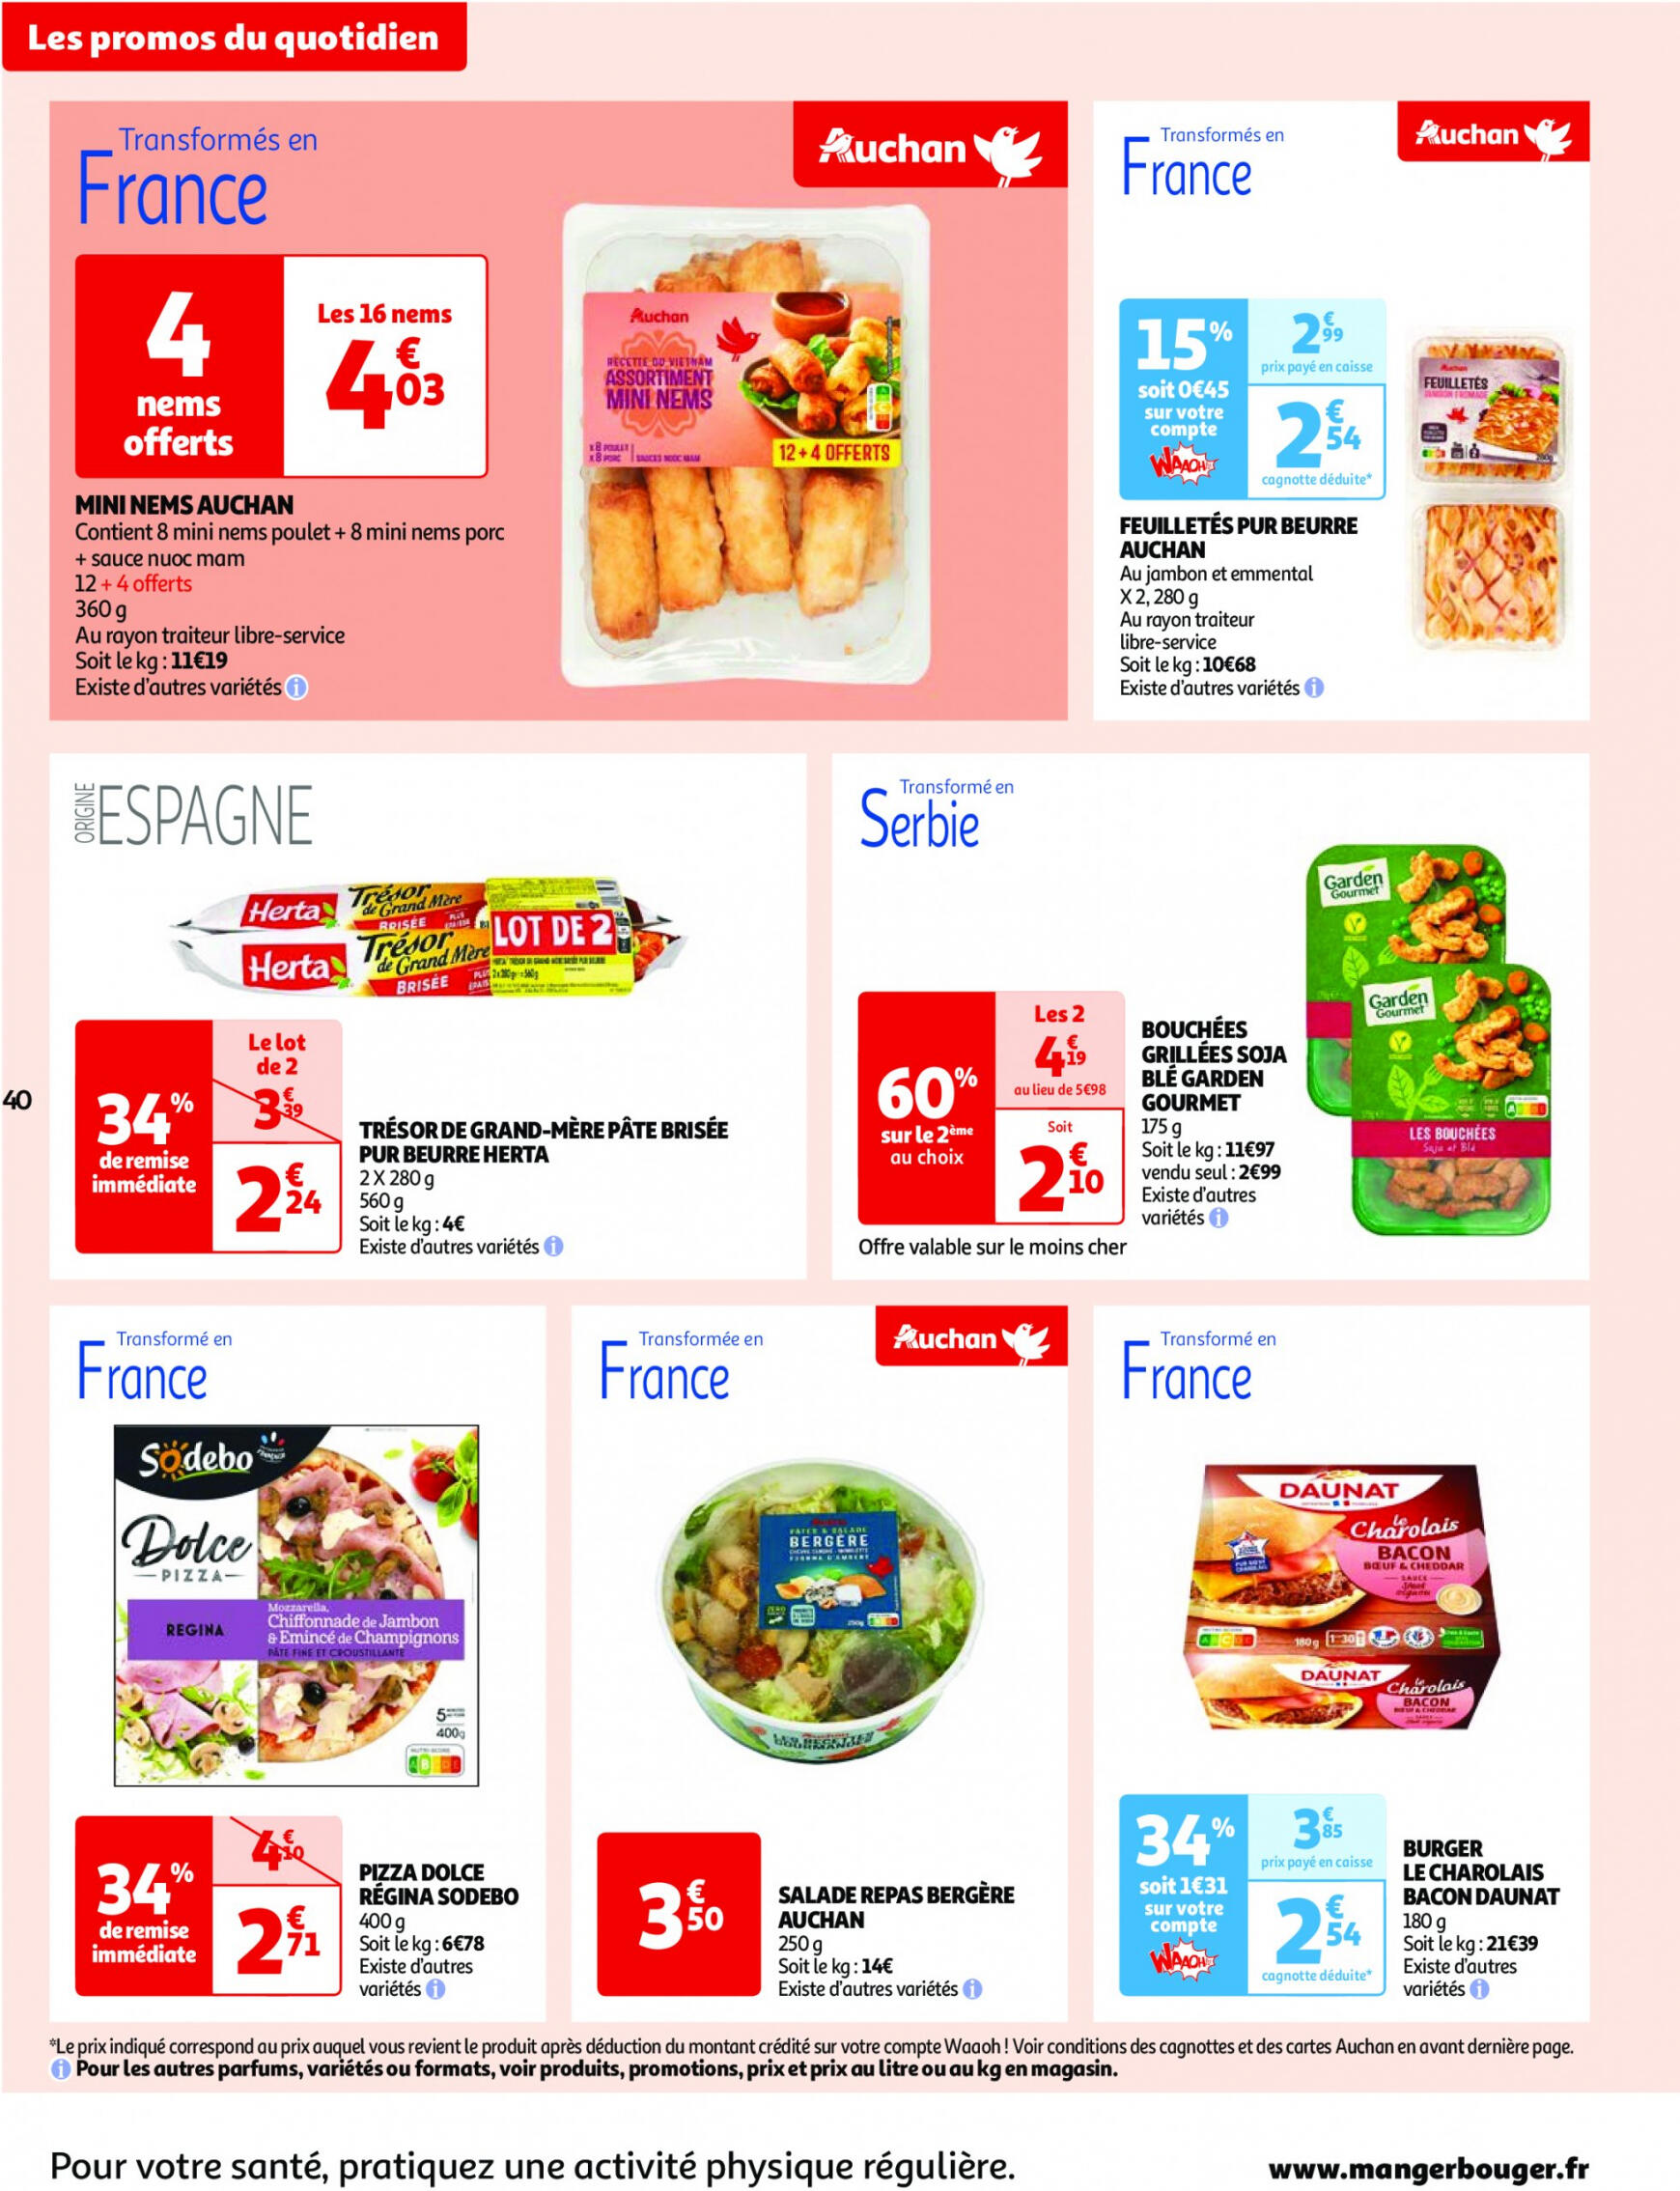 auchan - Prospectus Auchan actuel 30.04. - 06.05. - page: 40